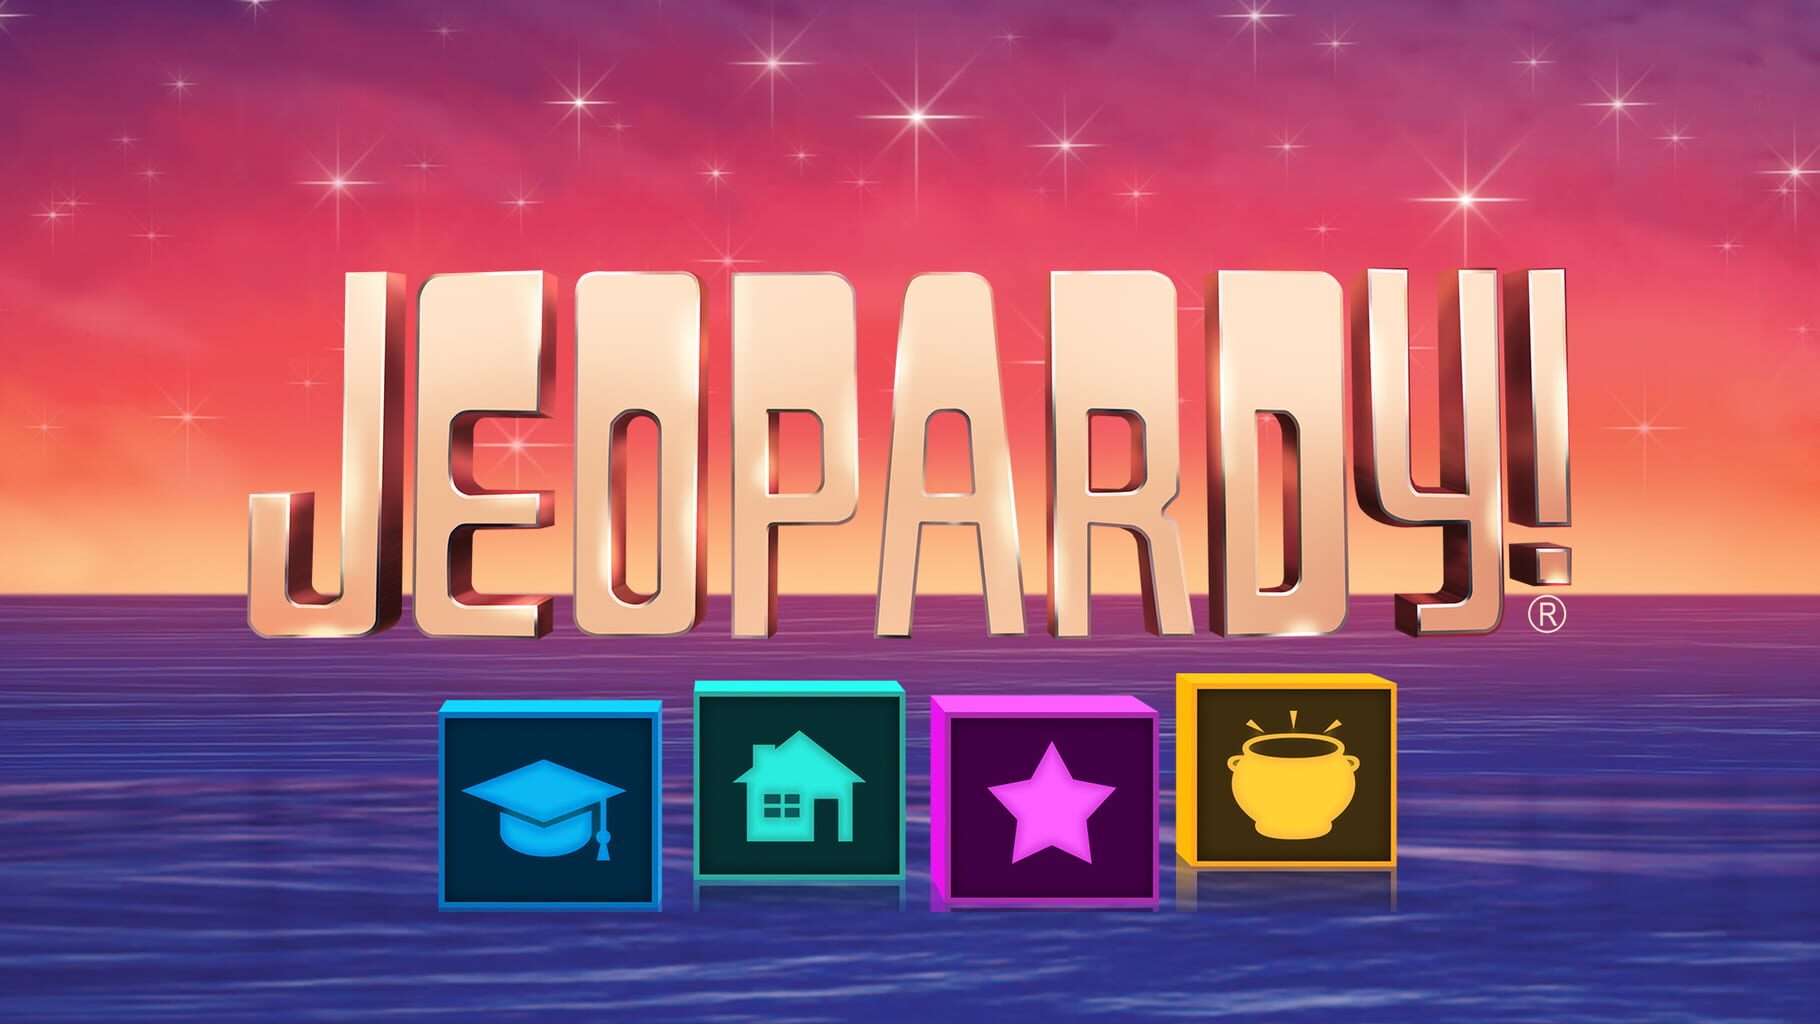 Jeopardy! artwork